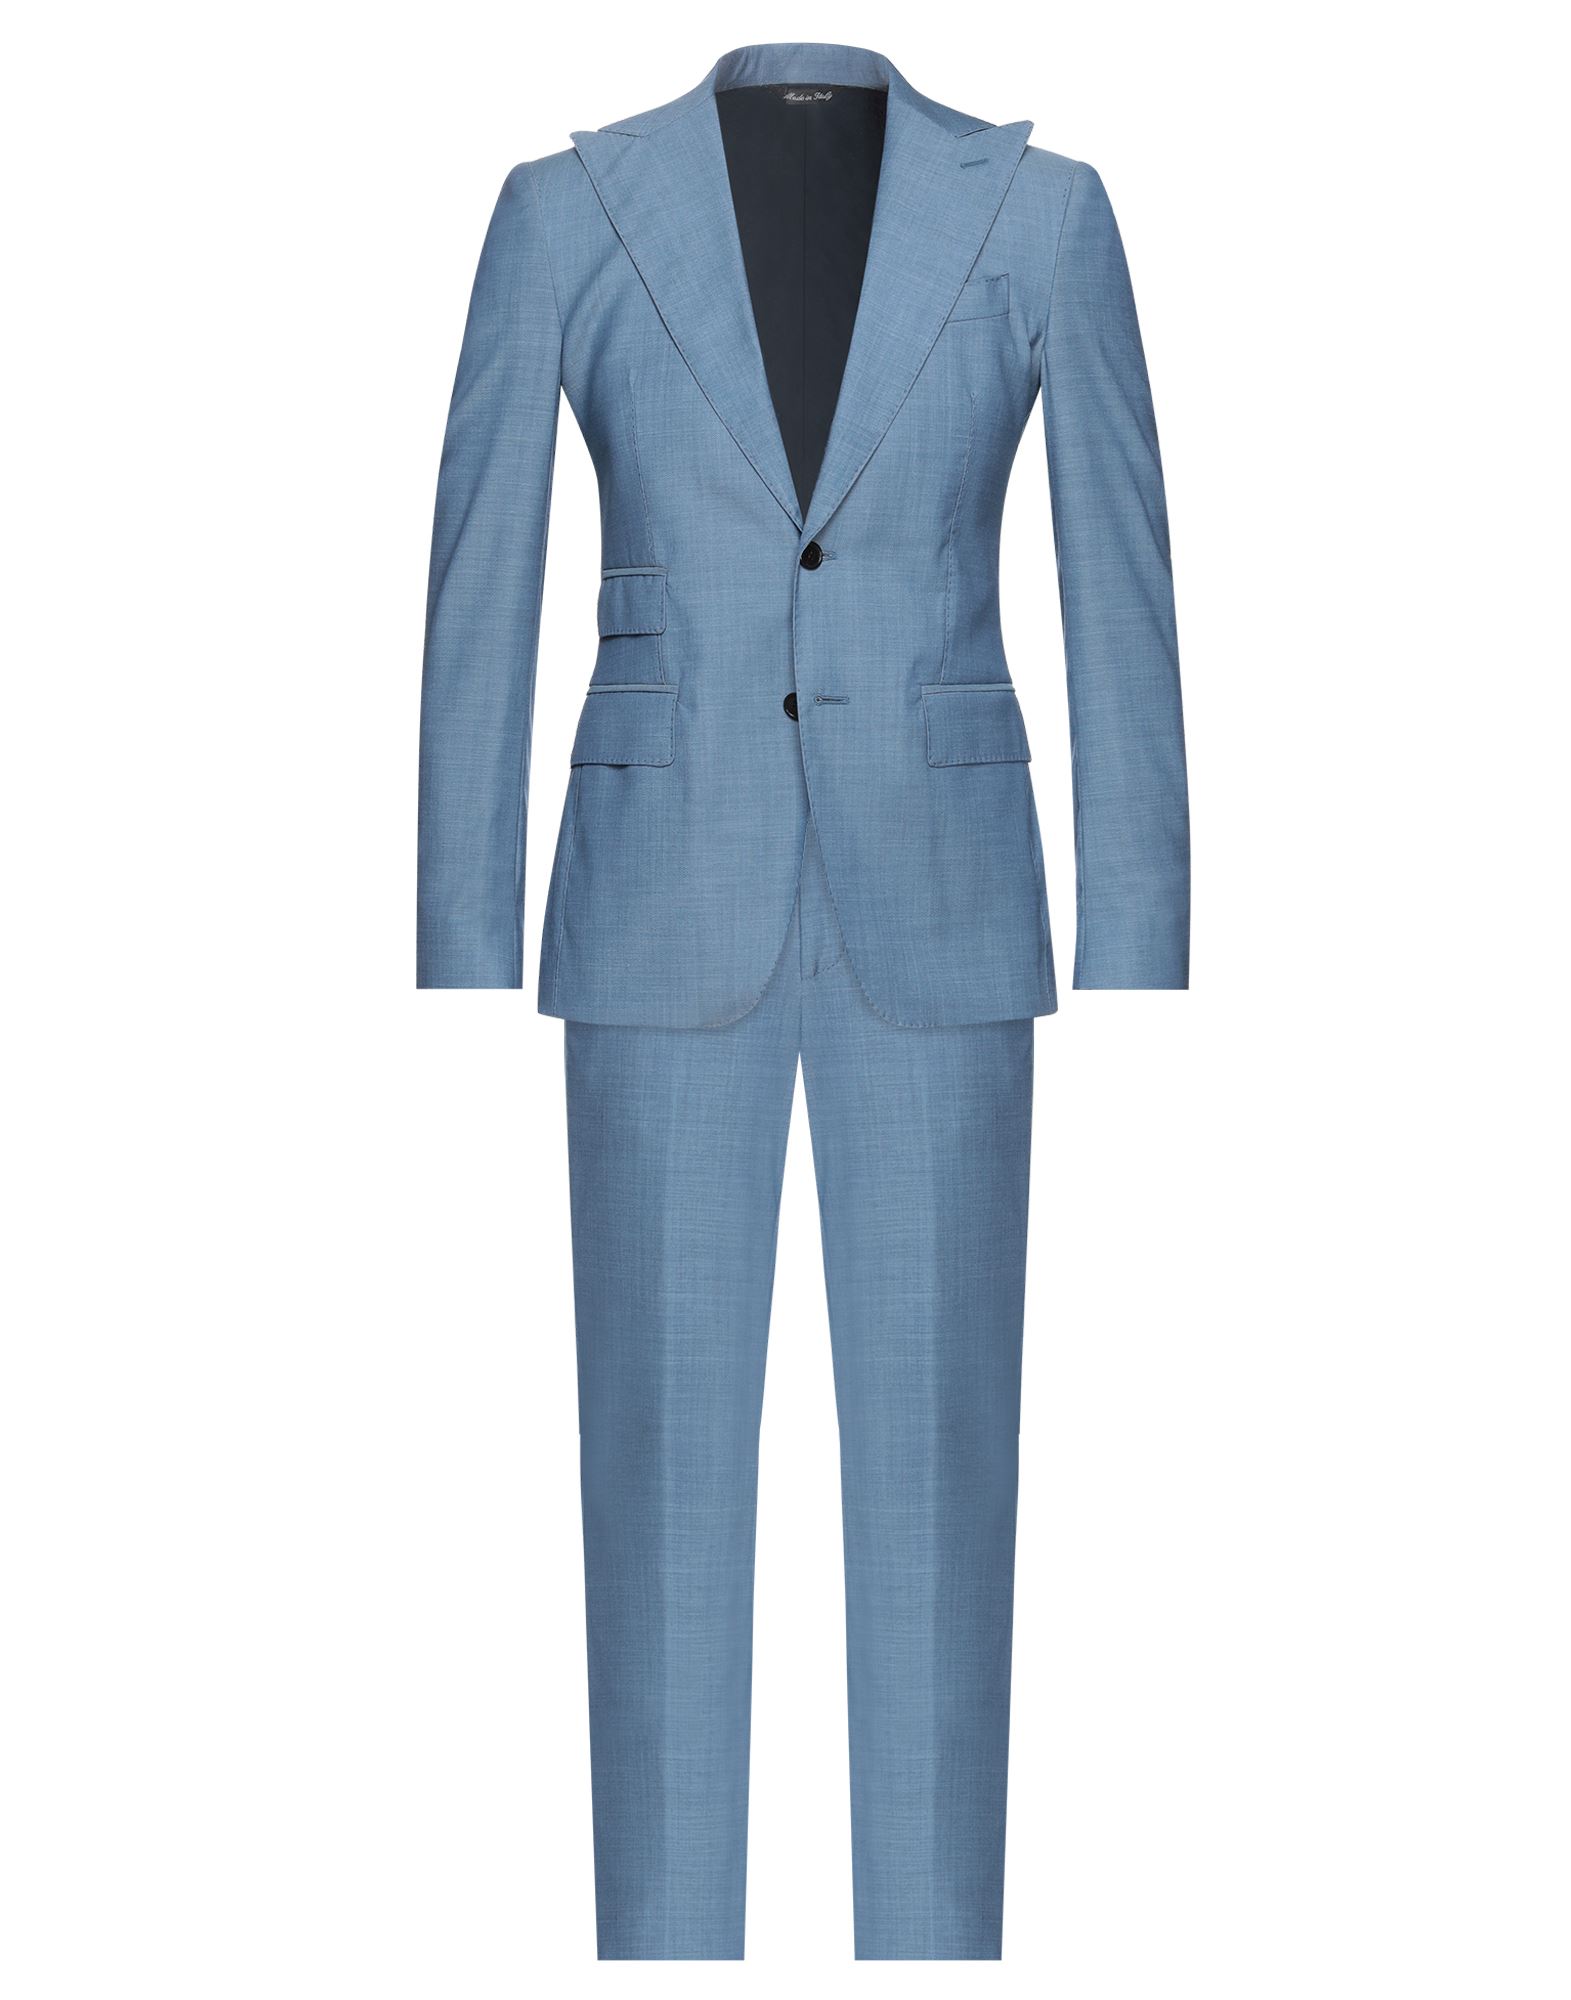 GAETANO AIELLO Suits